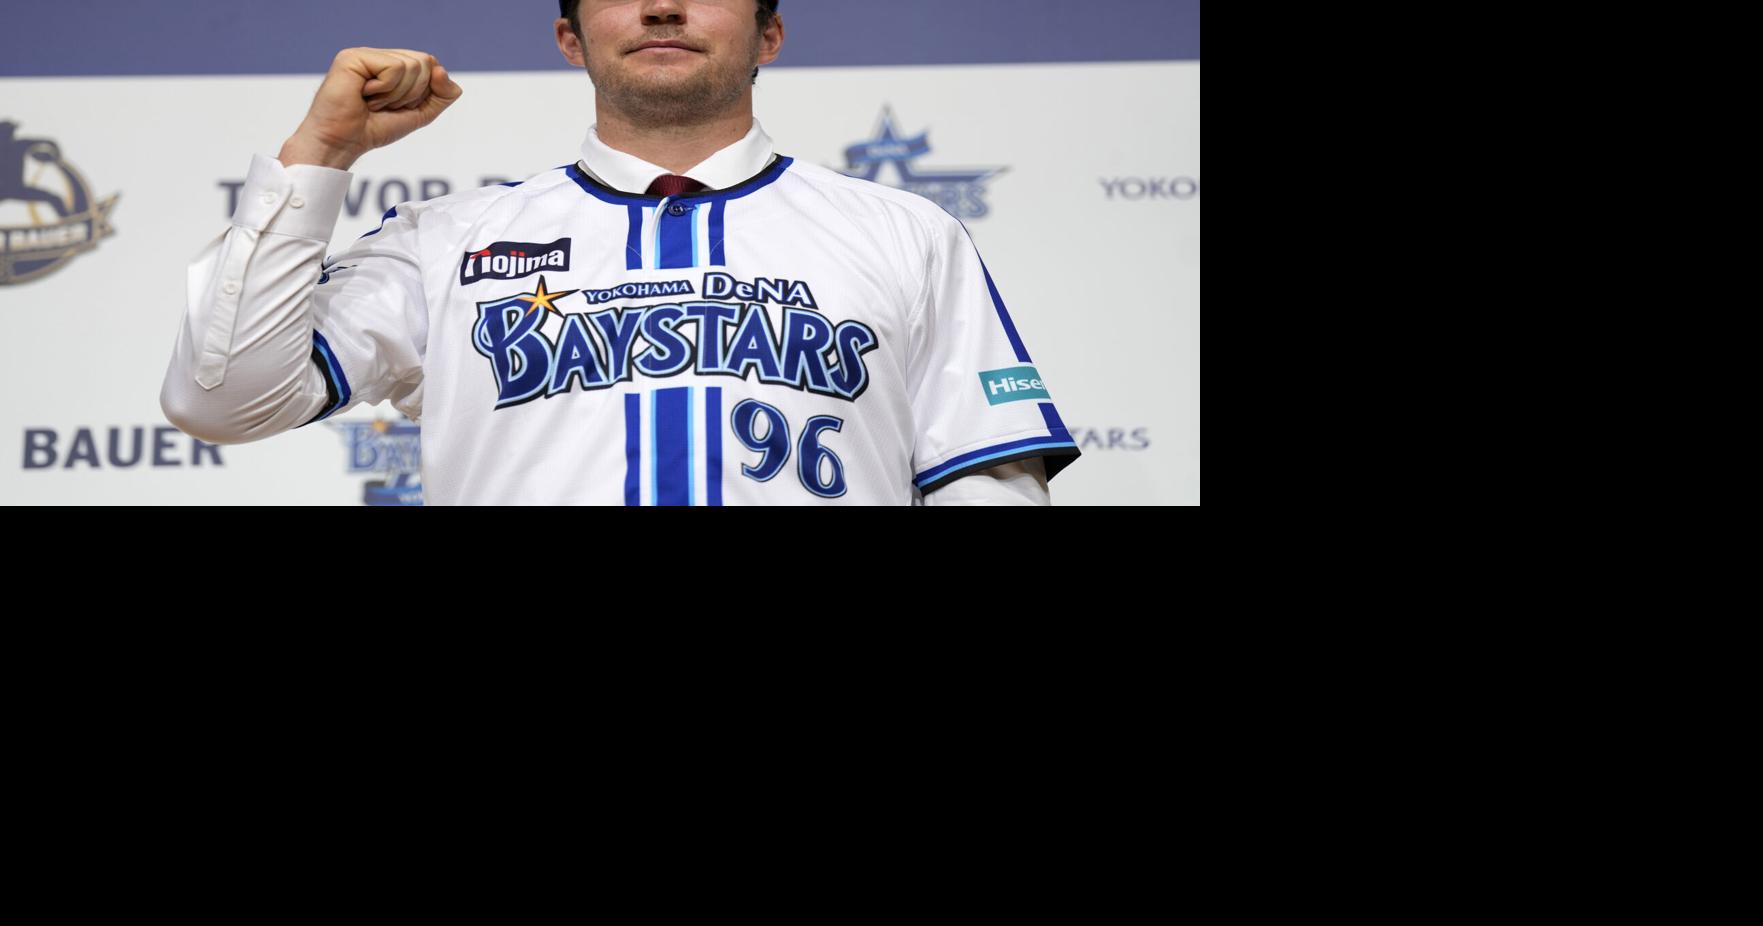 Trevor Bauer, shunned by MLB, makes Japanese baseball debut